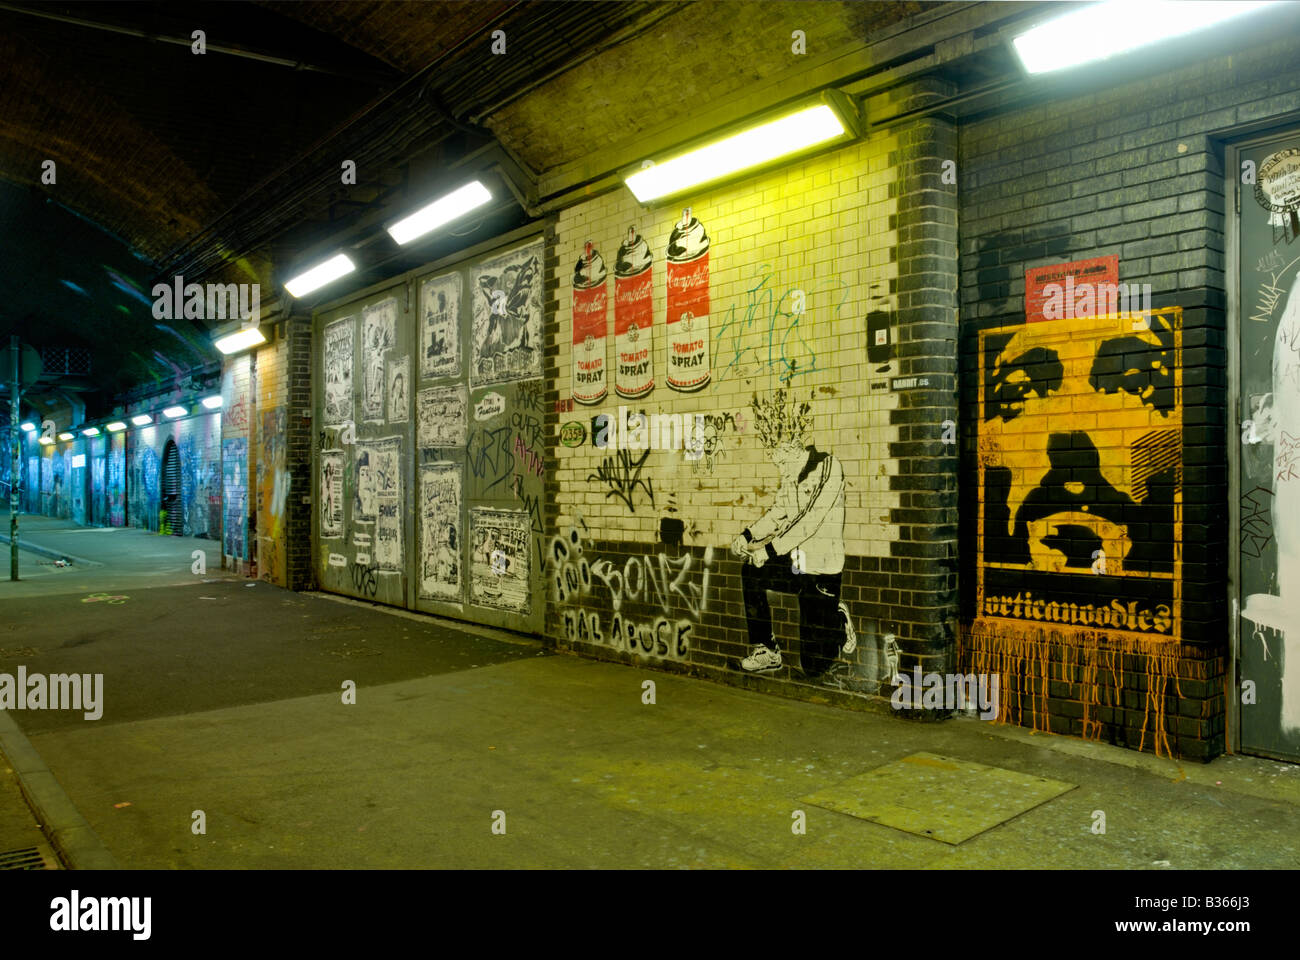 Banksy, les boîtes collectives Festival, 'Leake Street' Tunnel, la gare de Waterloo, Londres, Angleterre, un graffiti sur le mur du tunnel Banque D'Images